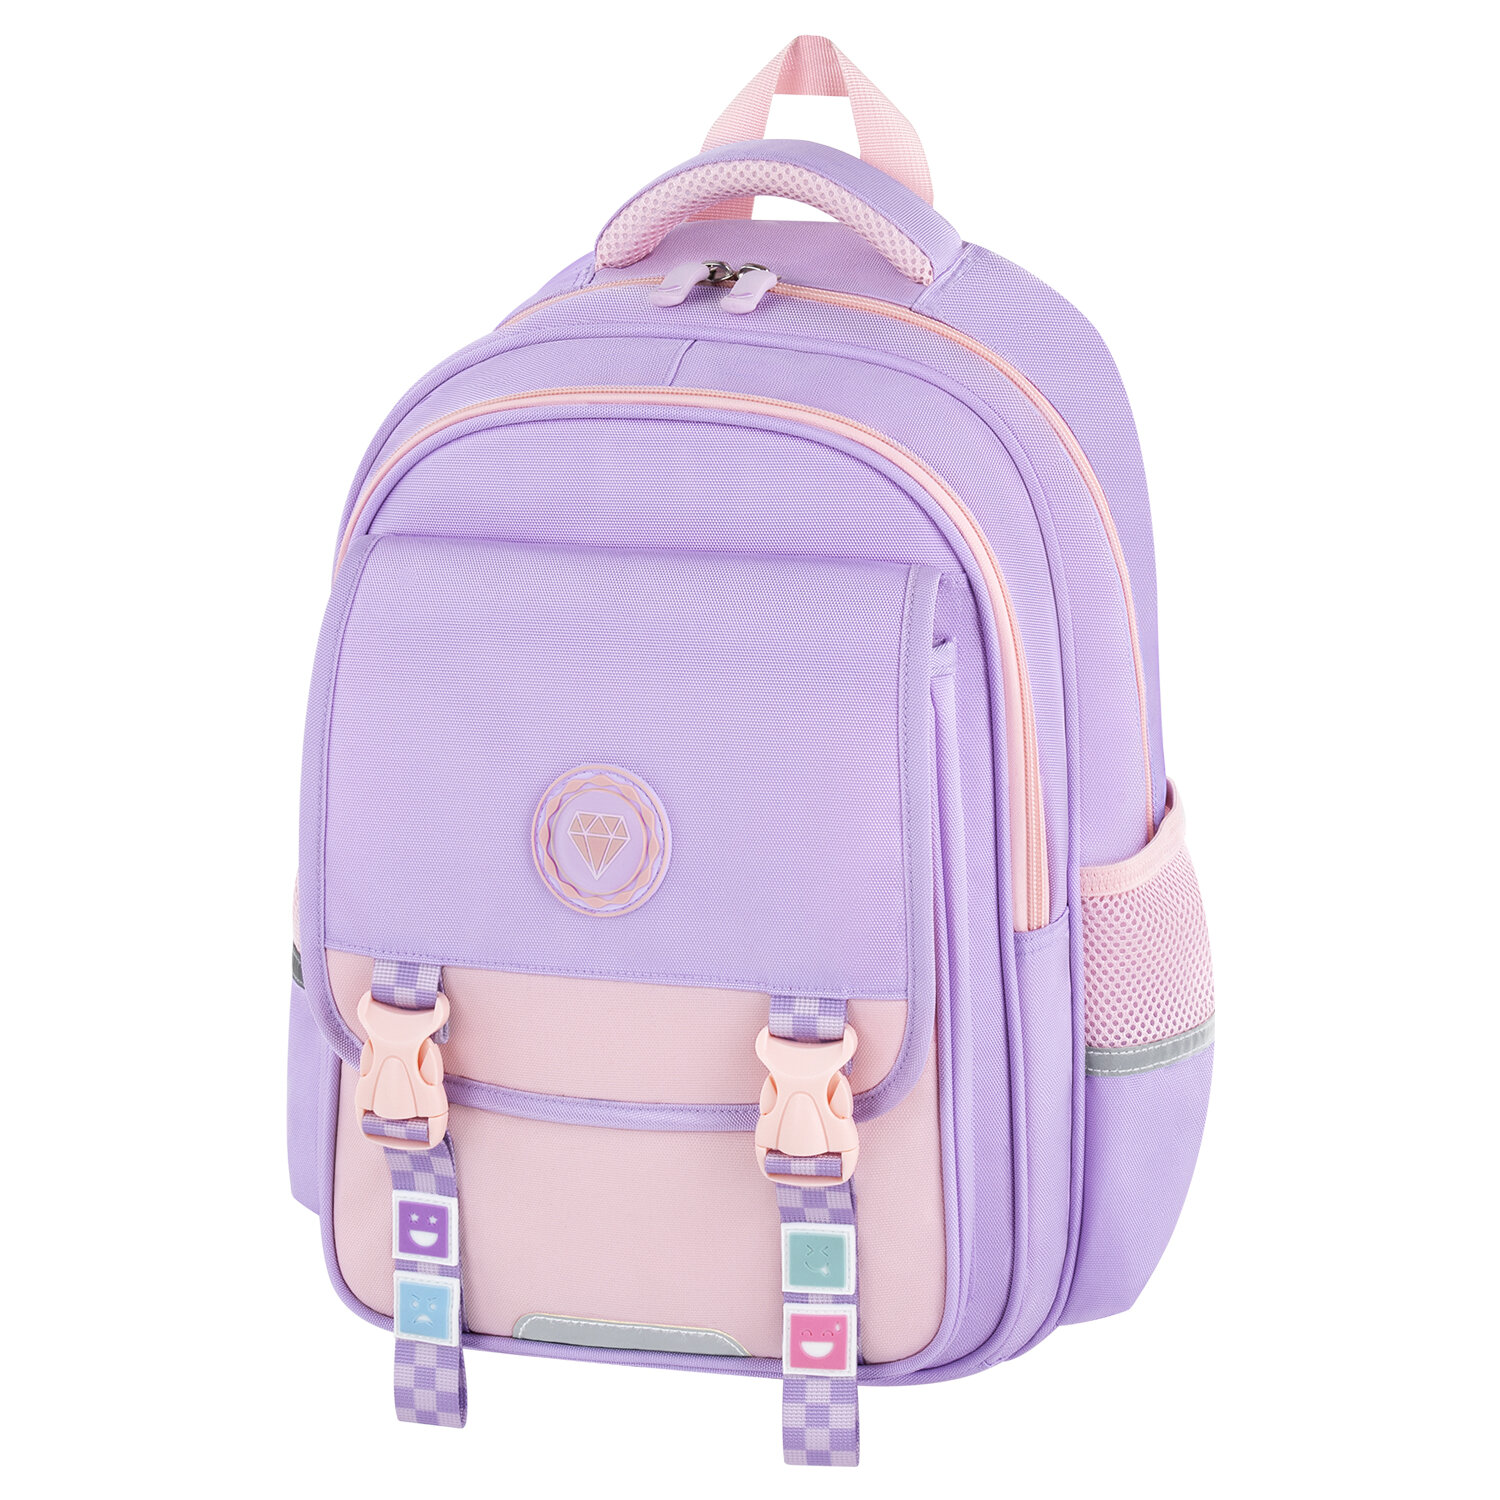 Рюкзак школьный Brauberg Snap Delicate lilac 272068 для девочки в школу для подростков